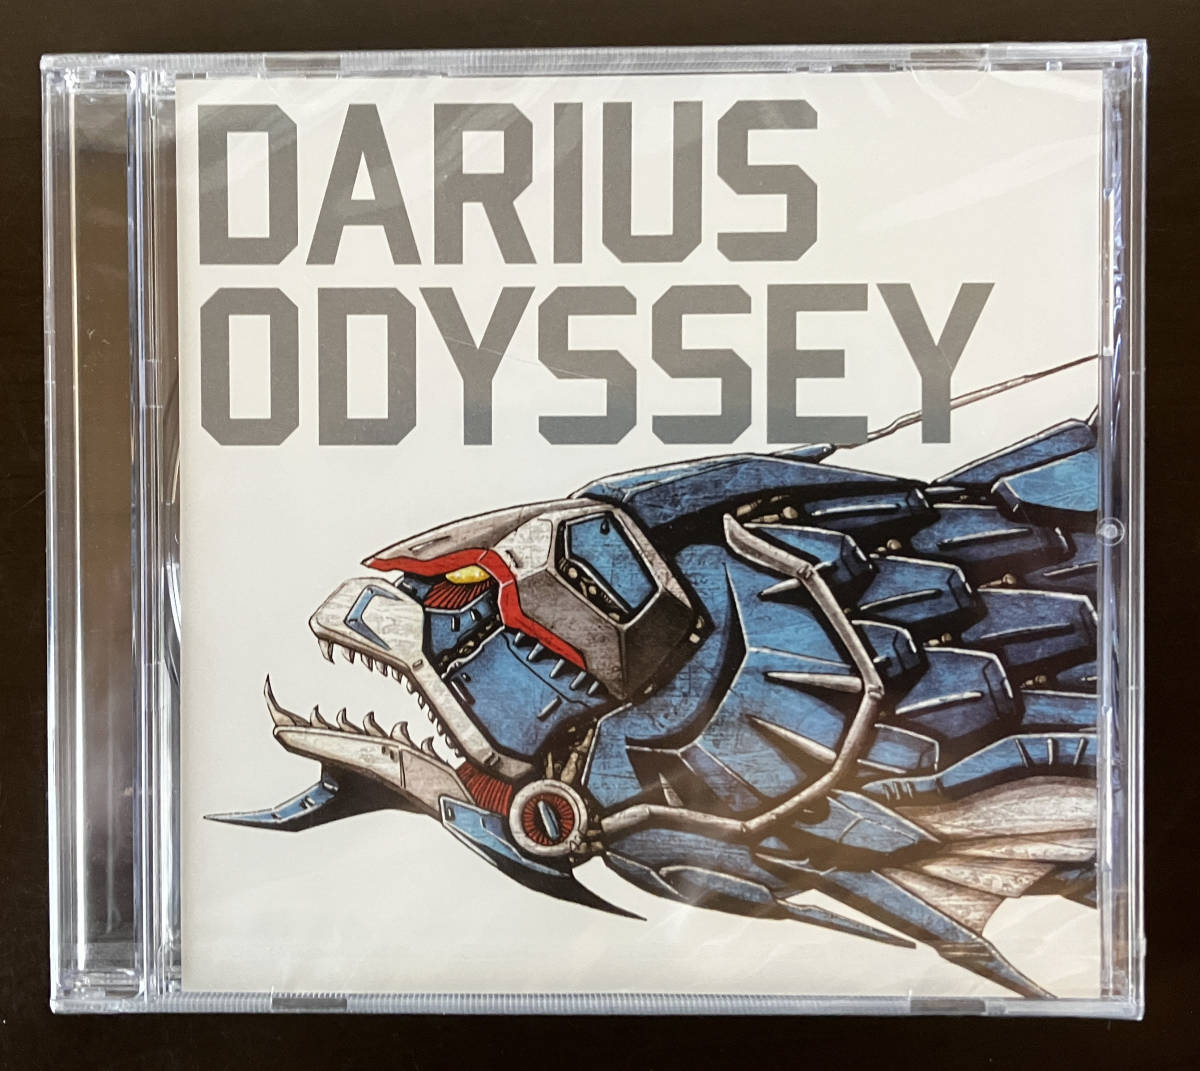 ダライアス オデッセイ CDの画像1